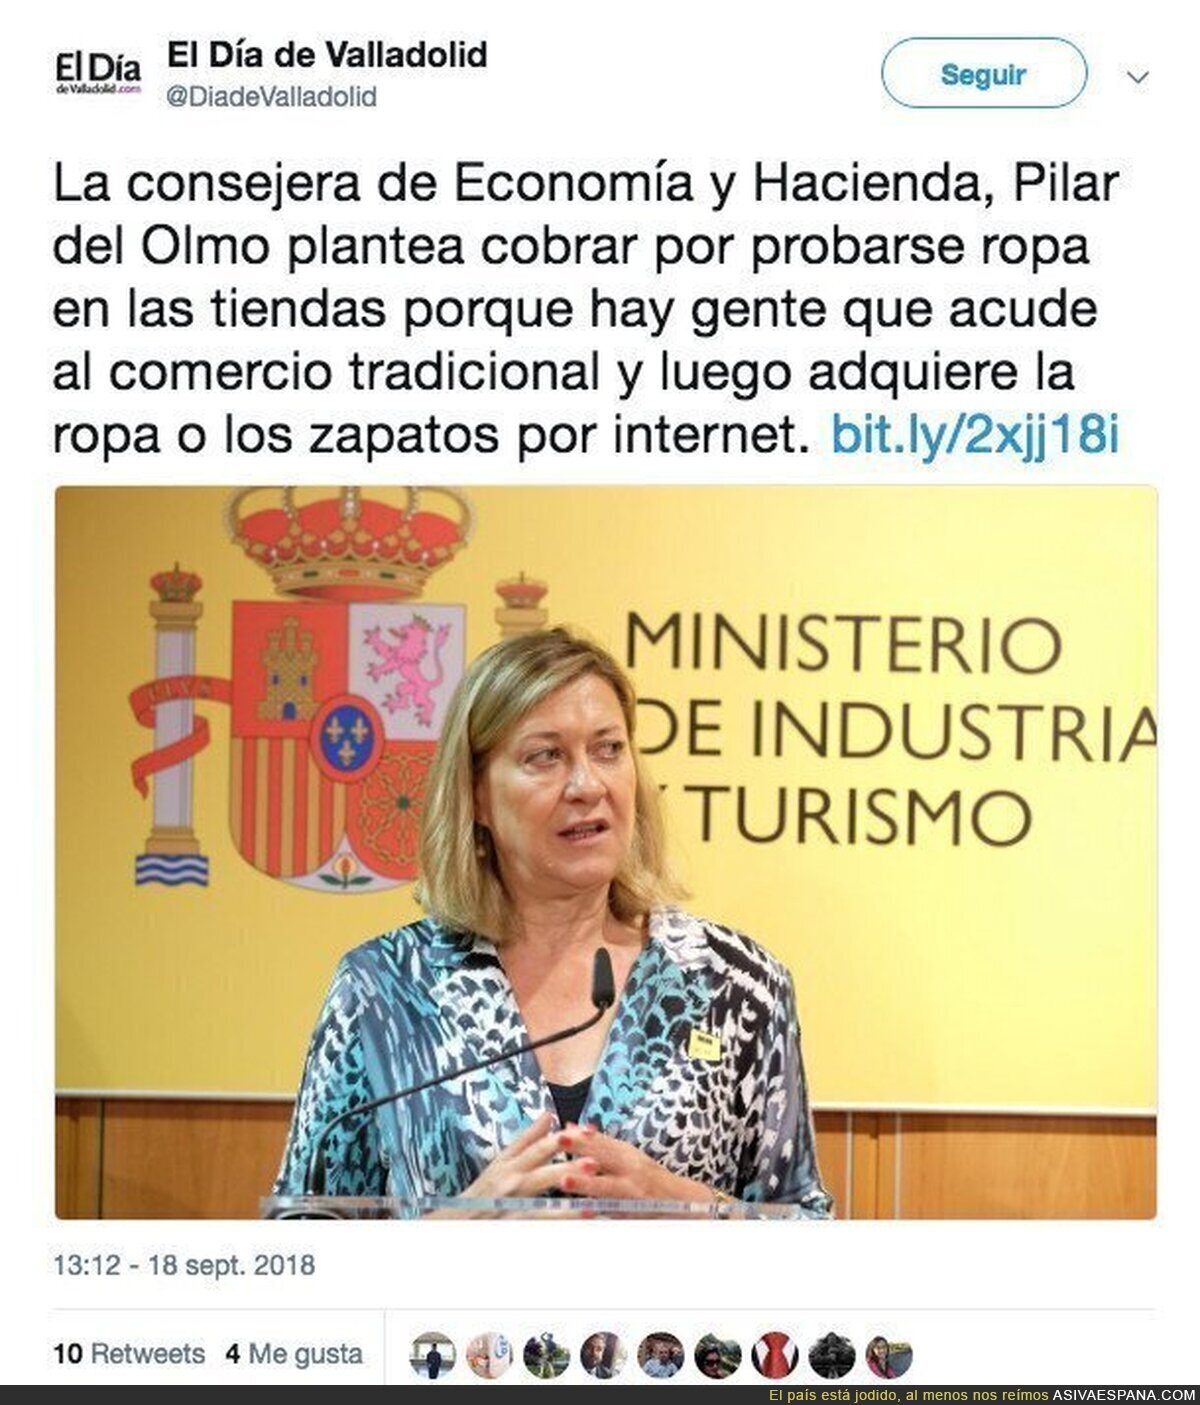 La consejera de Economía y Hacienda de Castilla y León propone cobrar por probarse ropa en las tiendas